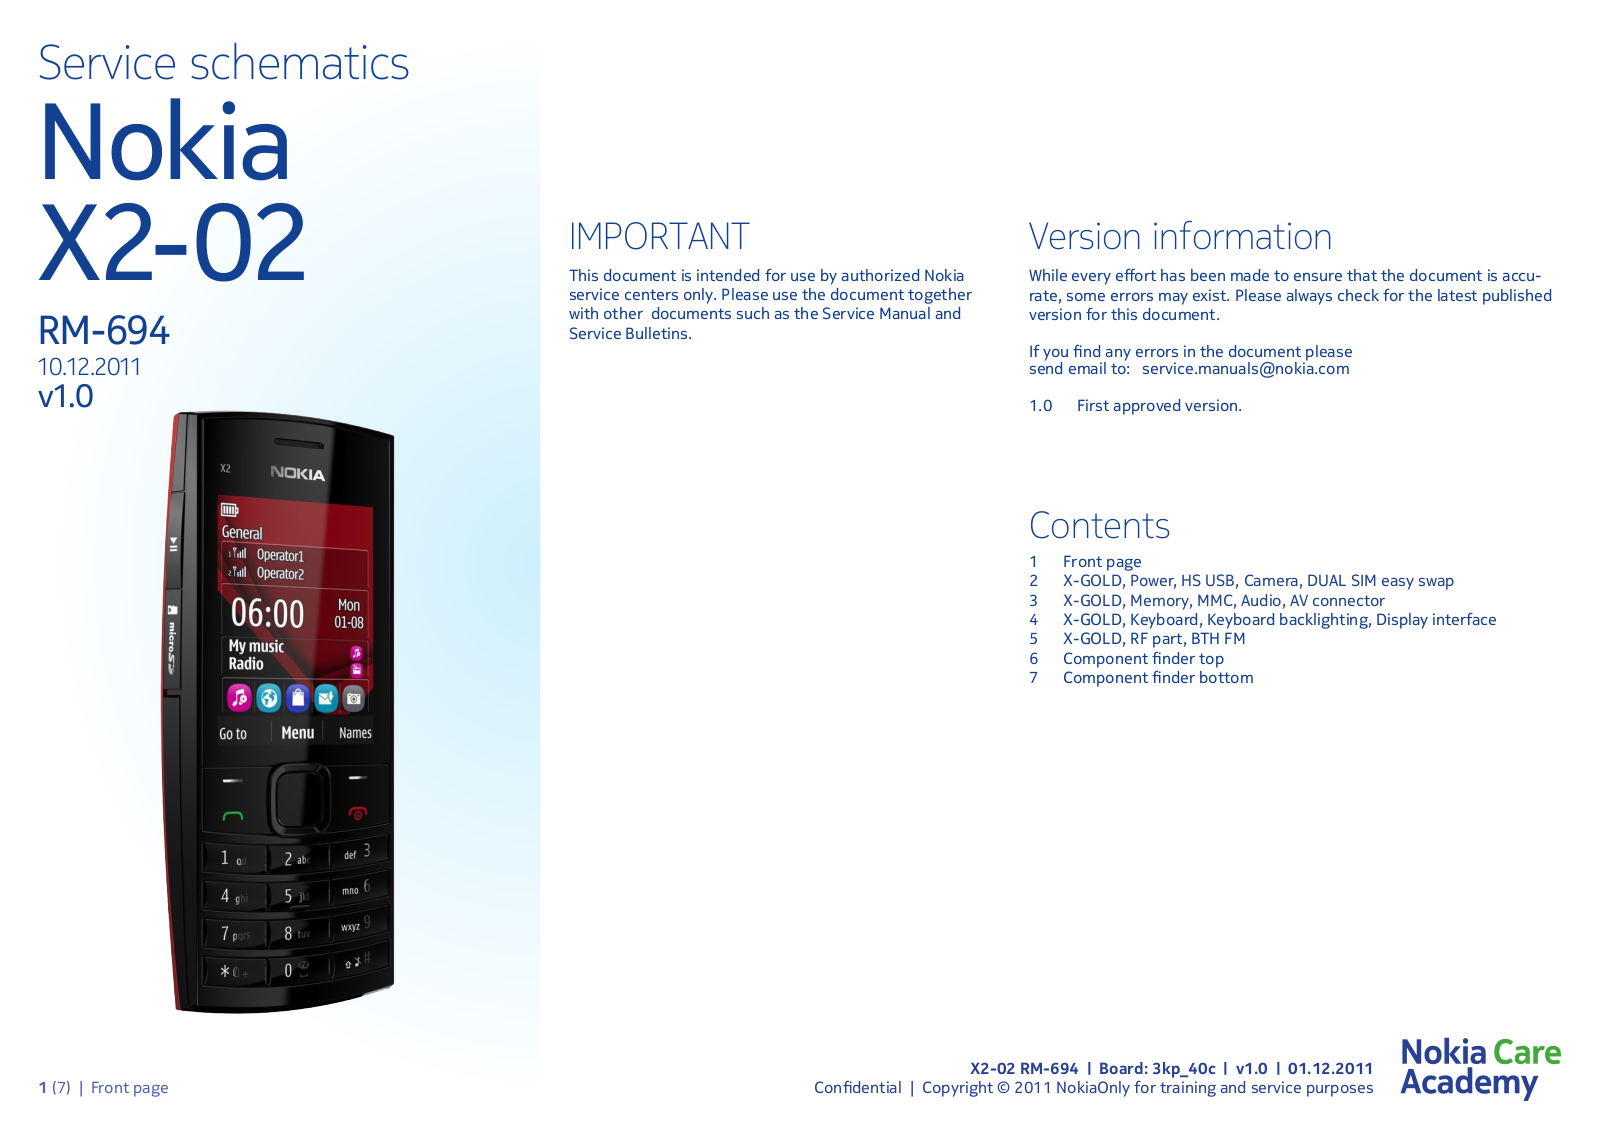 Nokia X2-02, RM-694 Service Schematics